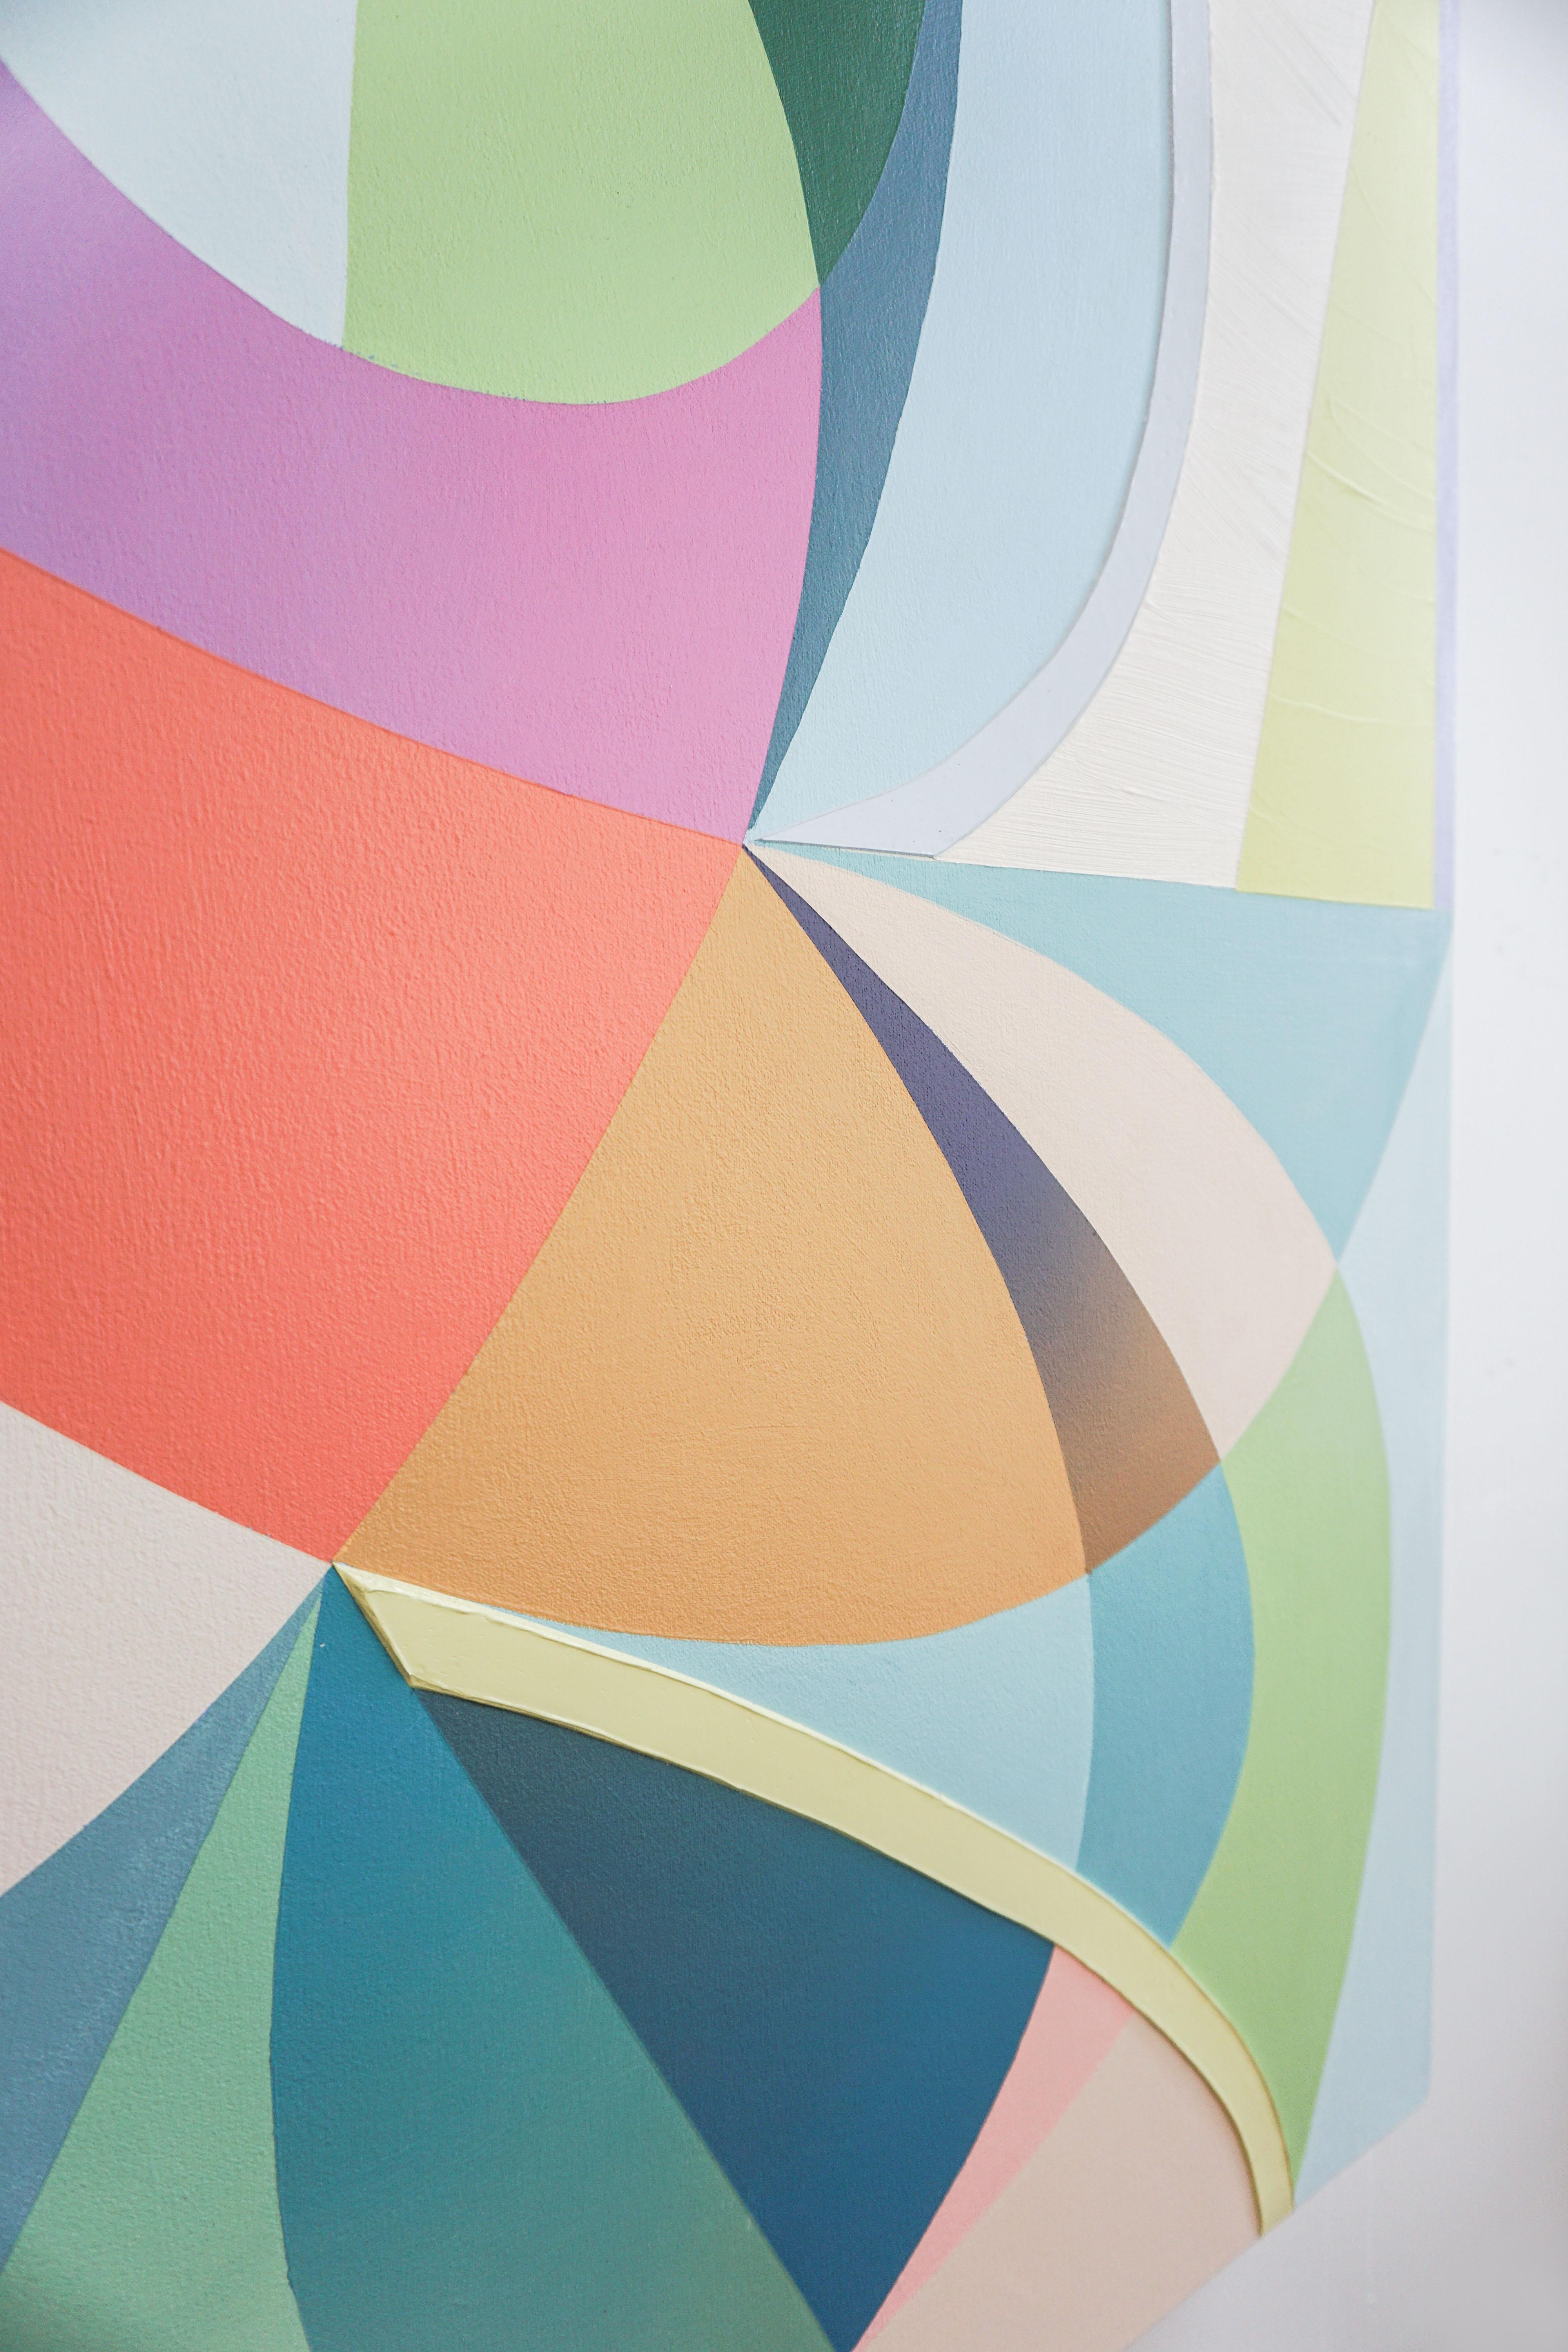 GEOTHERMAL - Peinture expressionniste abstraite contemporaine, géométrique multicolore - Gris Abstract Painting par Michelle Weddle